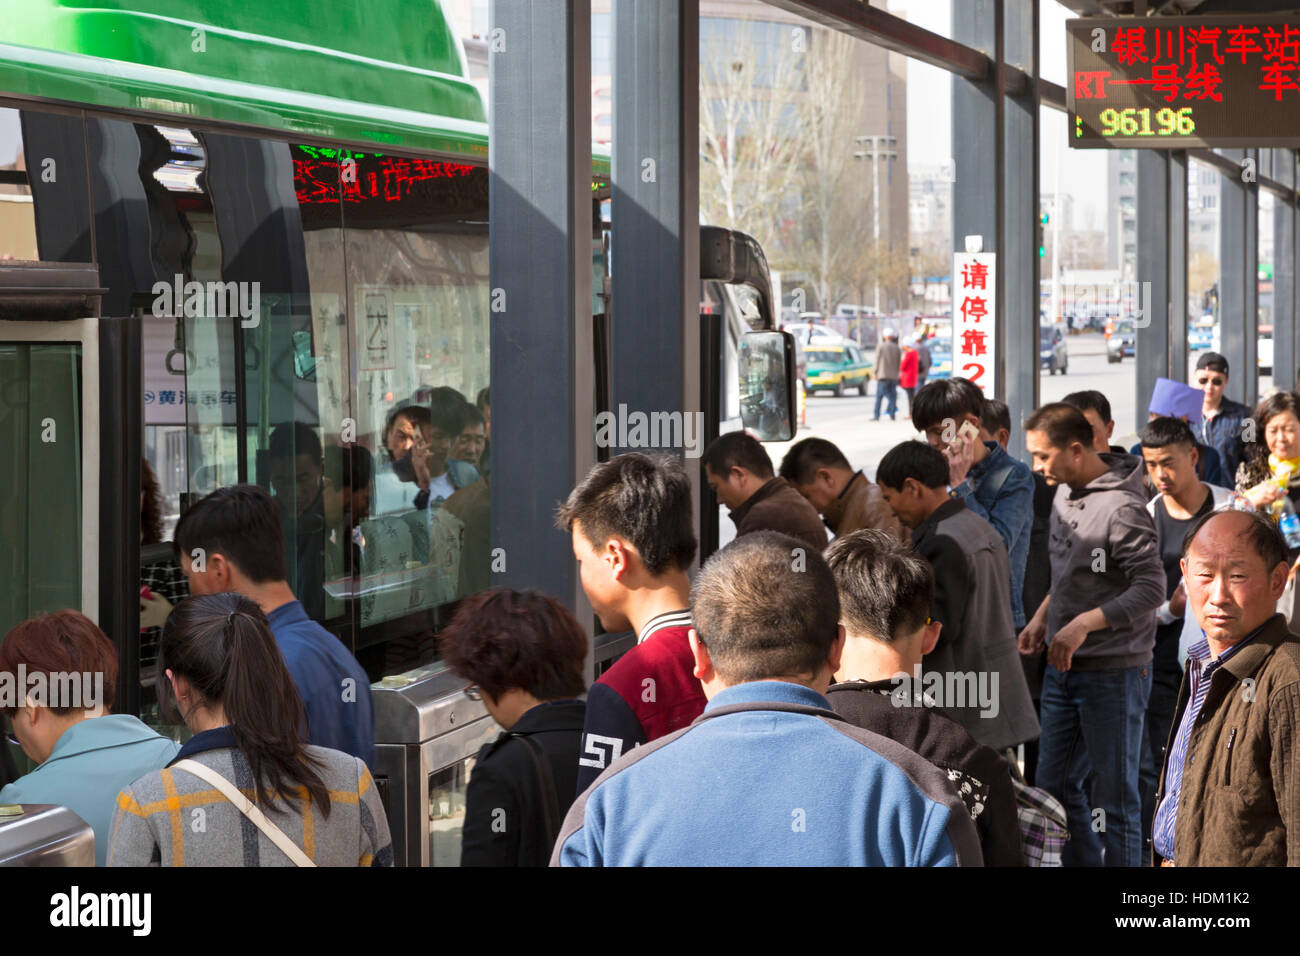 Fermata bus per il sistema di transito rapido, Yinchuan, Ningxia, Cina Foto Stock